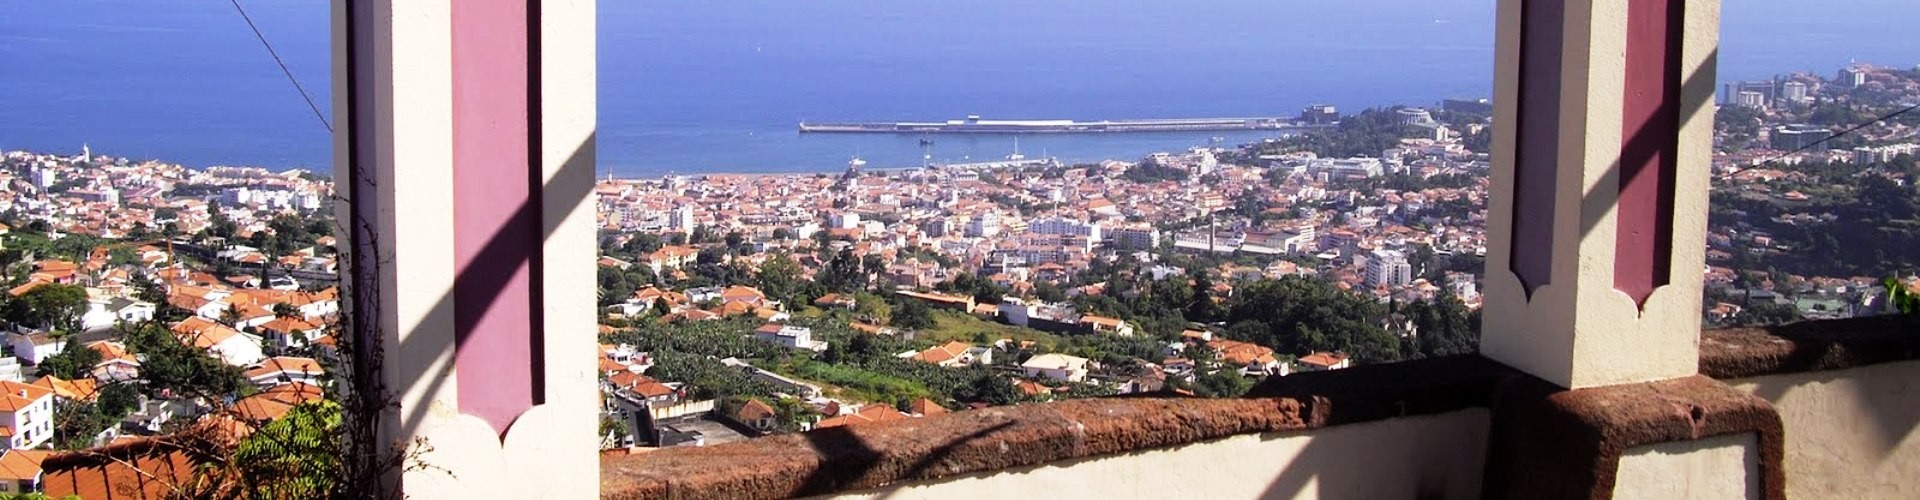 Miradouro dos Marmeleiros Viewpoint Funchal, Madeira